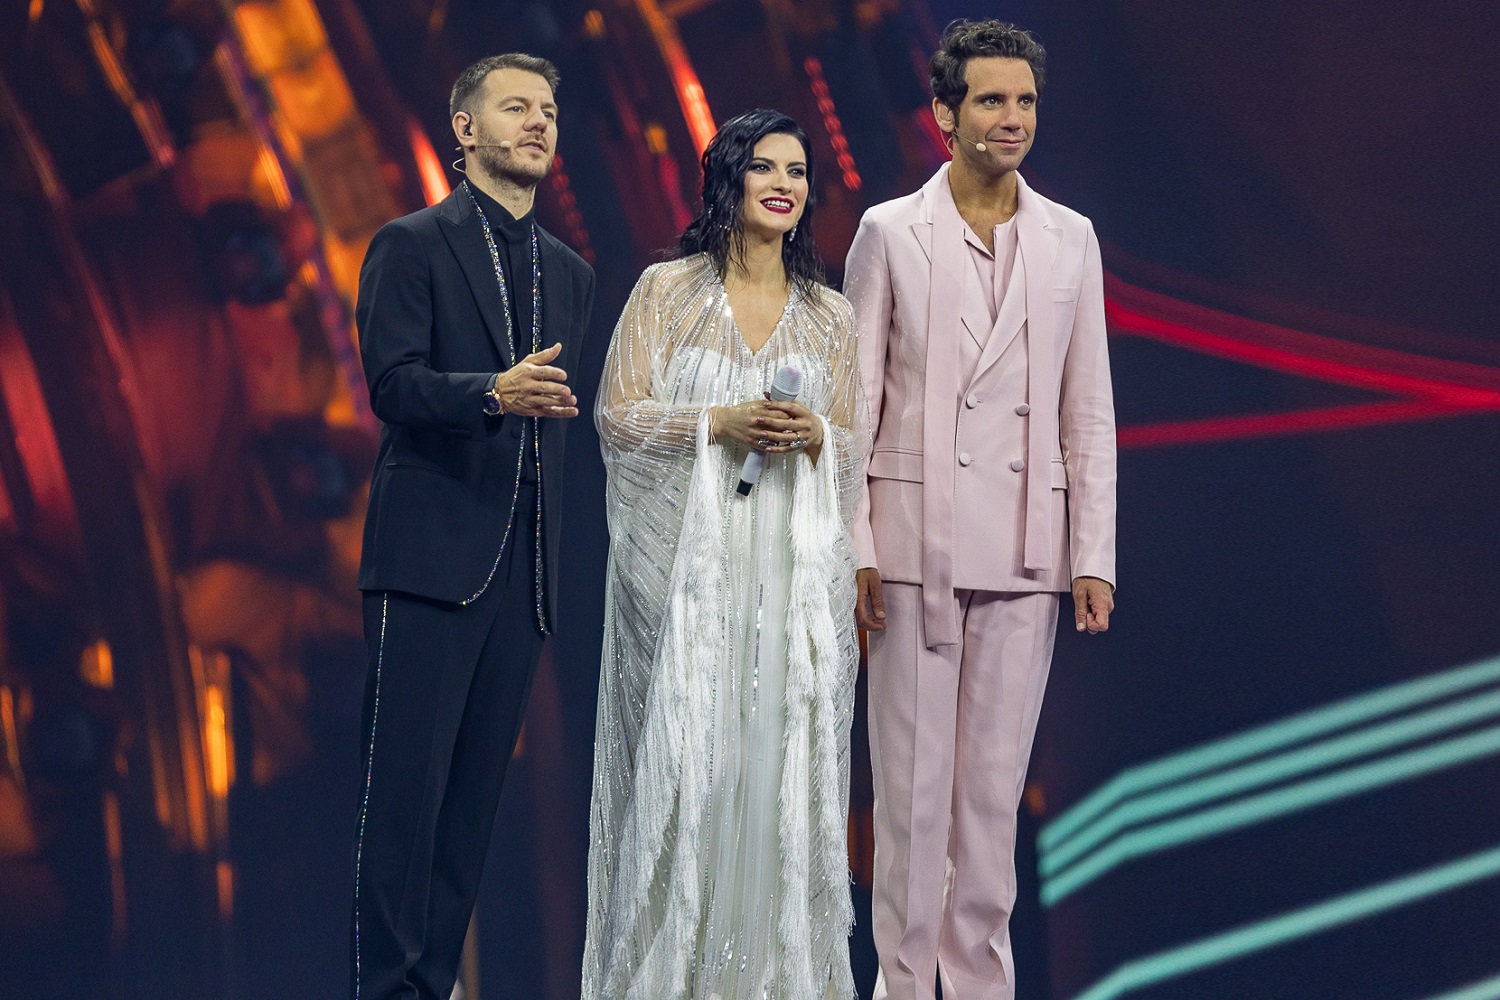 AscoltiTV 12 maggio 2022: Eurovision, Un figlio di nome Erasmus, Dritto e rovescio, Piazzapulita, Amici, Isola, Uomini e donne, L'eredità